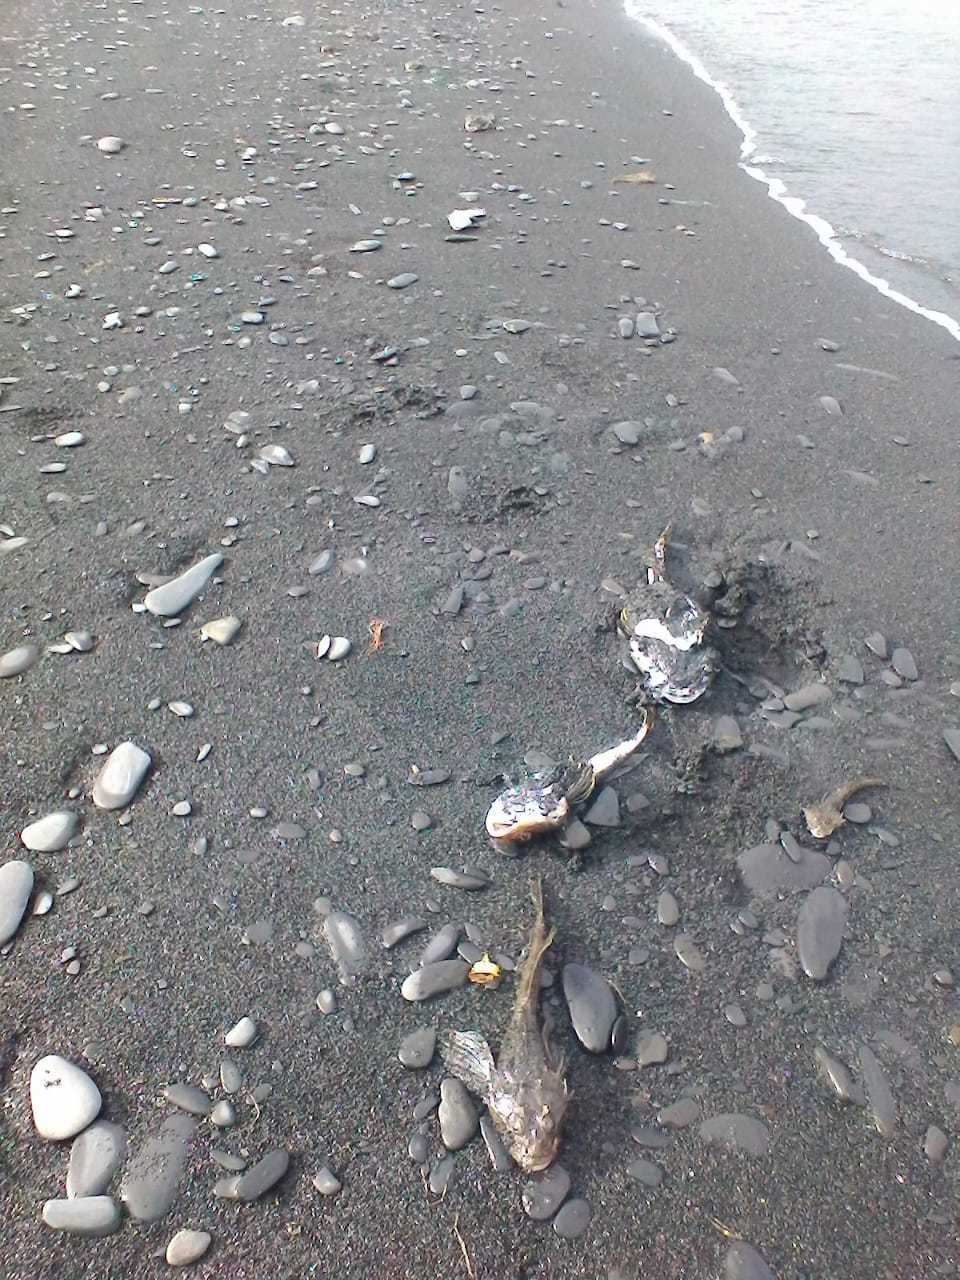 В Булунском улусе обнаружены мертвые рыбы. Идет проверка